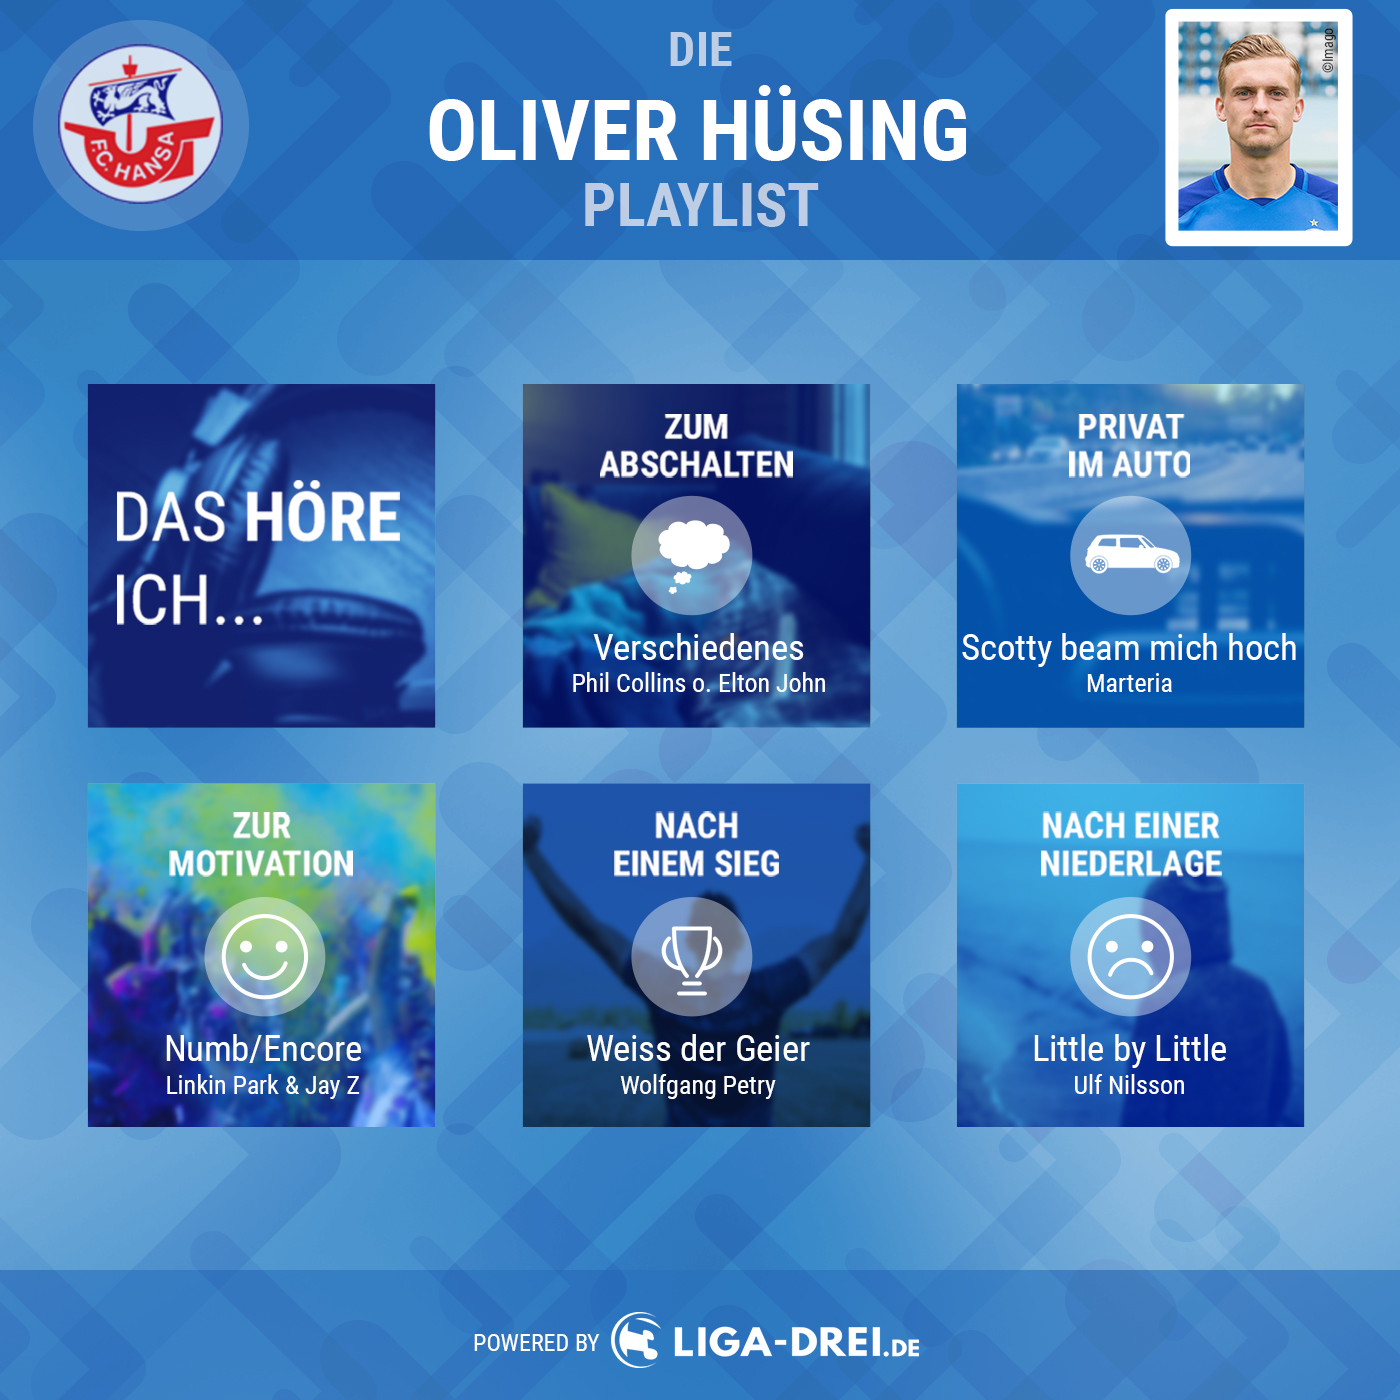 Liga-Drei.de Playlist von Oliver Hüsing